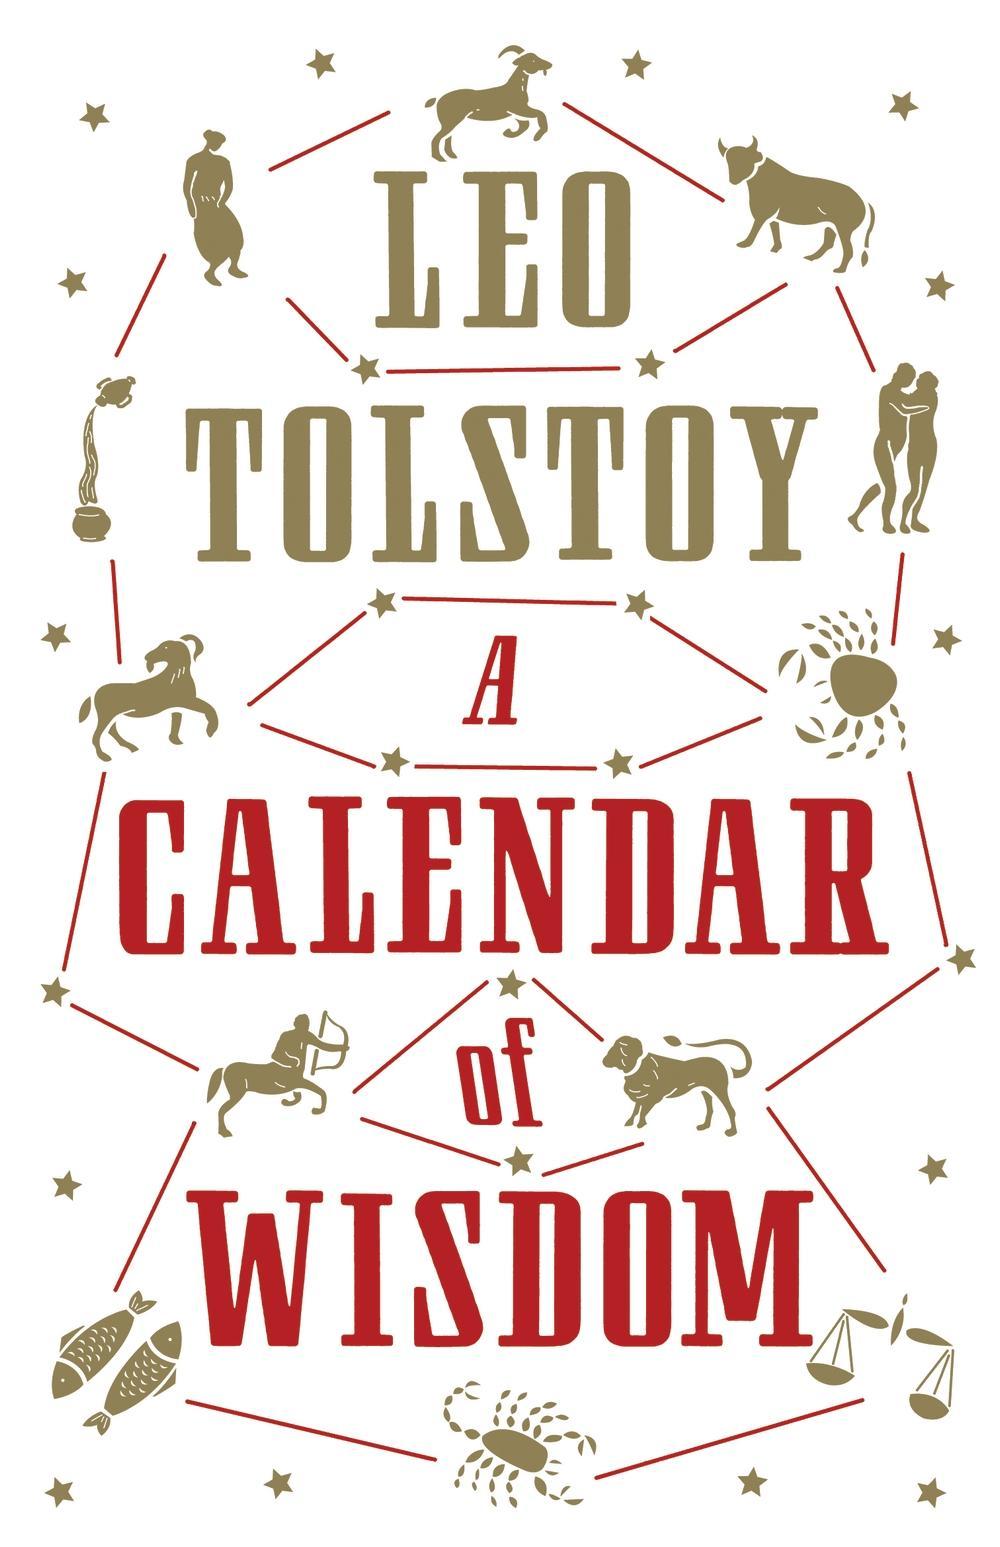 Calendar of Wisdom